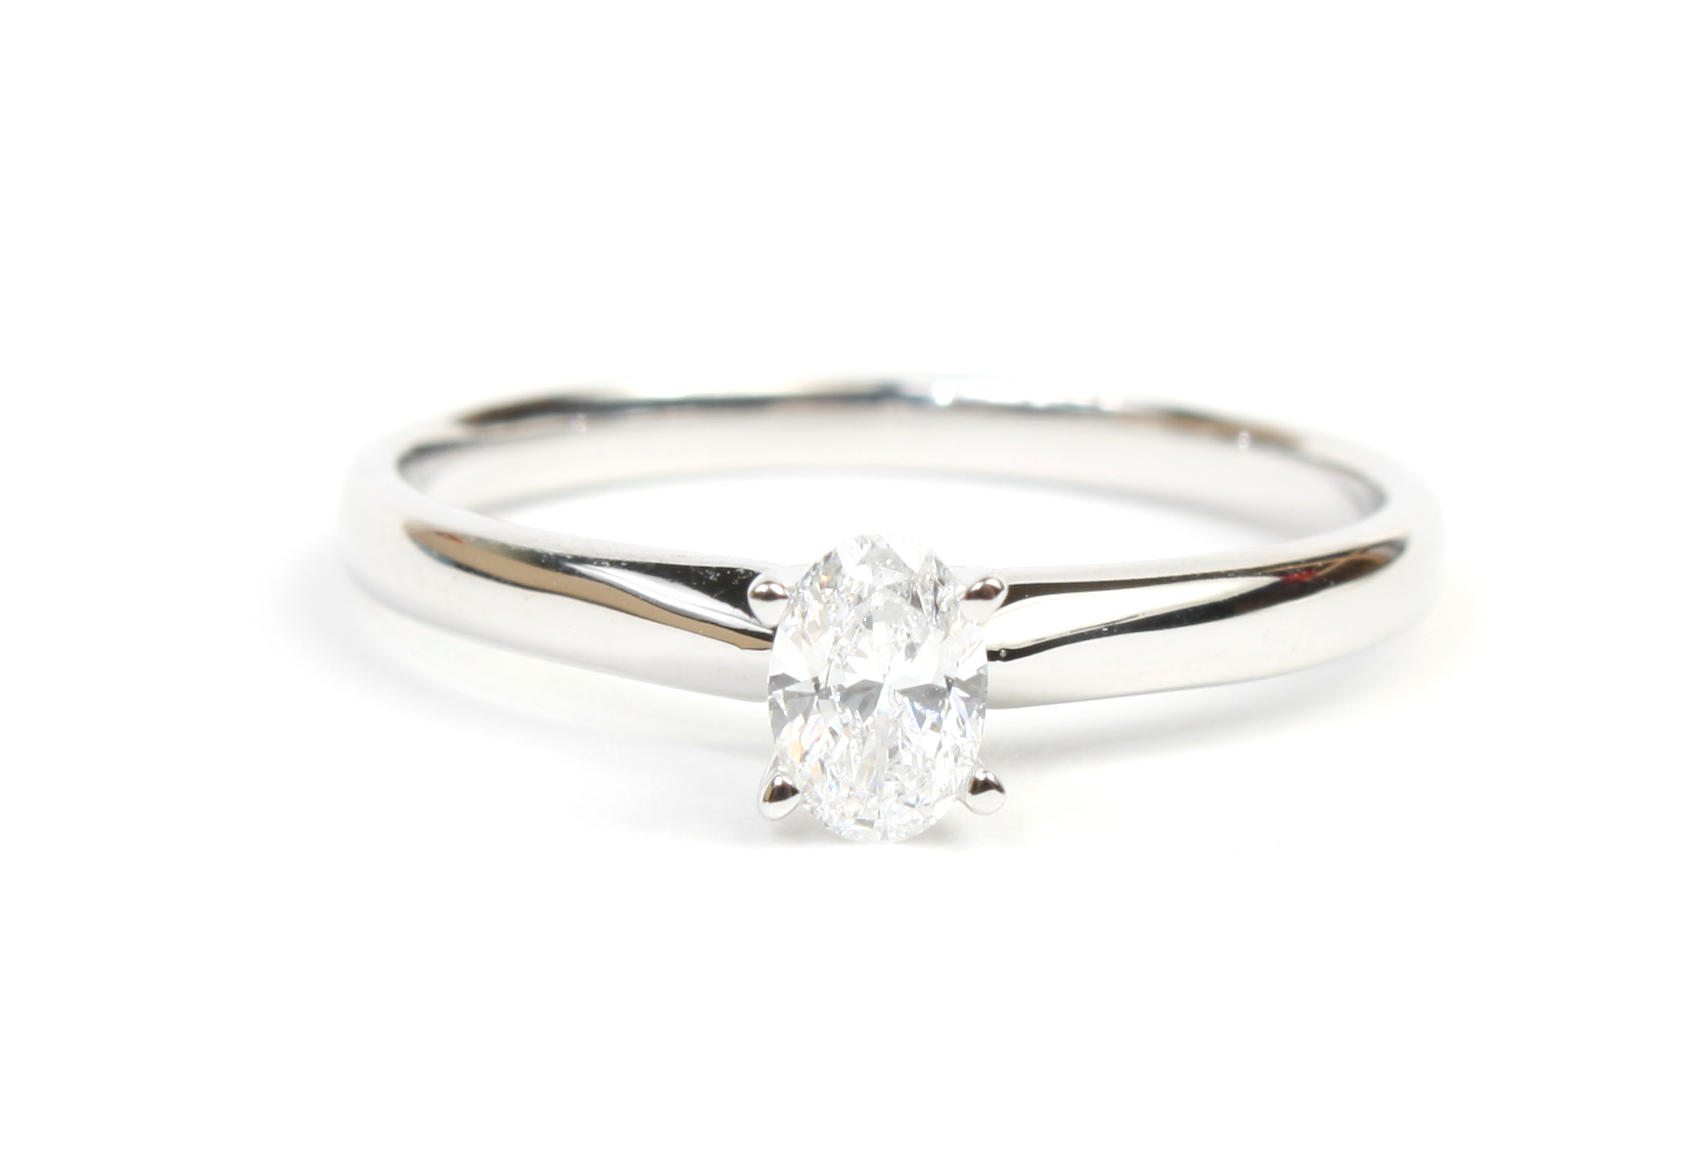 Diamond Engagement Ring Semi-Mount, 0.25 Carat Total Weight